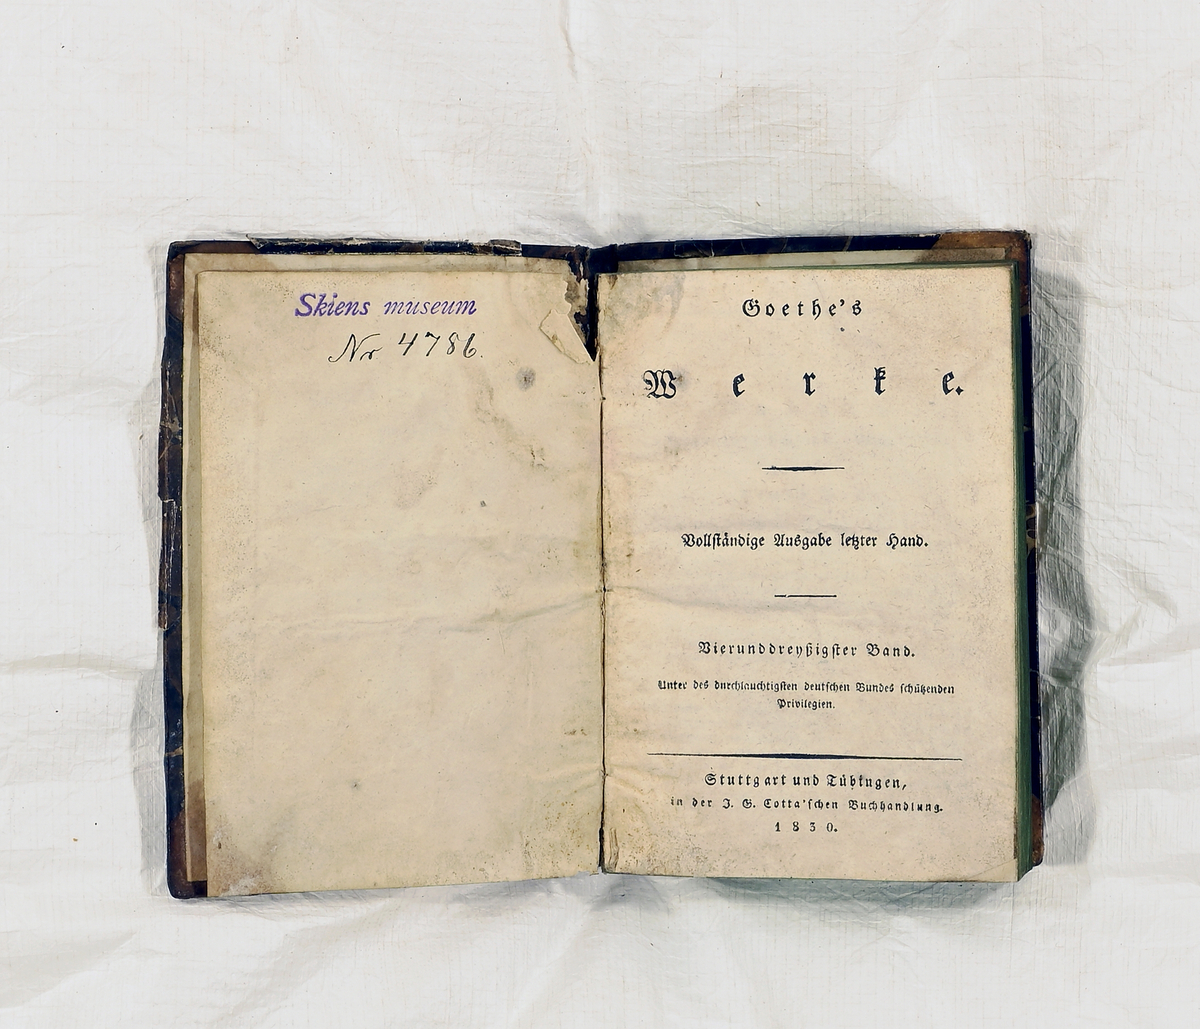 Prot: "Goethes Werke 2, 12, 34, 39". Stuttgart und Tübingen 1827-30. 262 s. 313 s. 371 s. 8. Indb.
